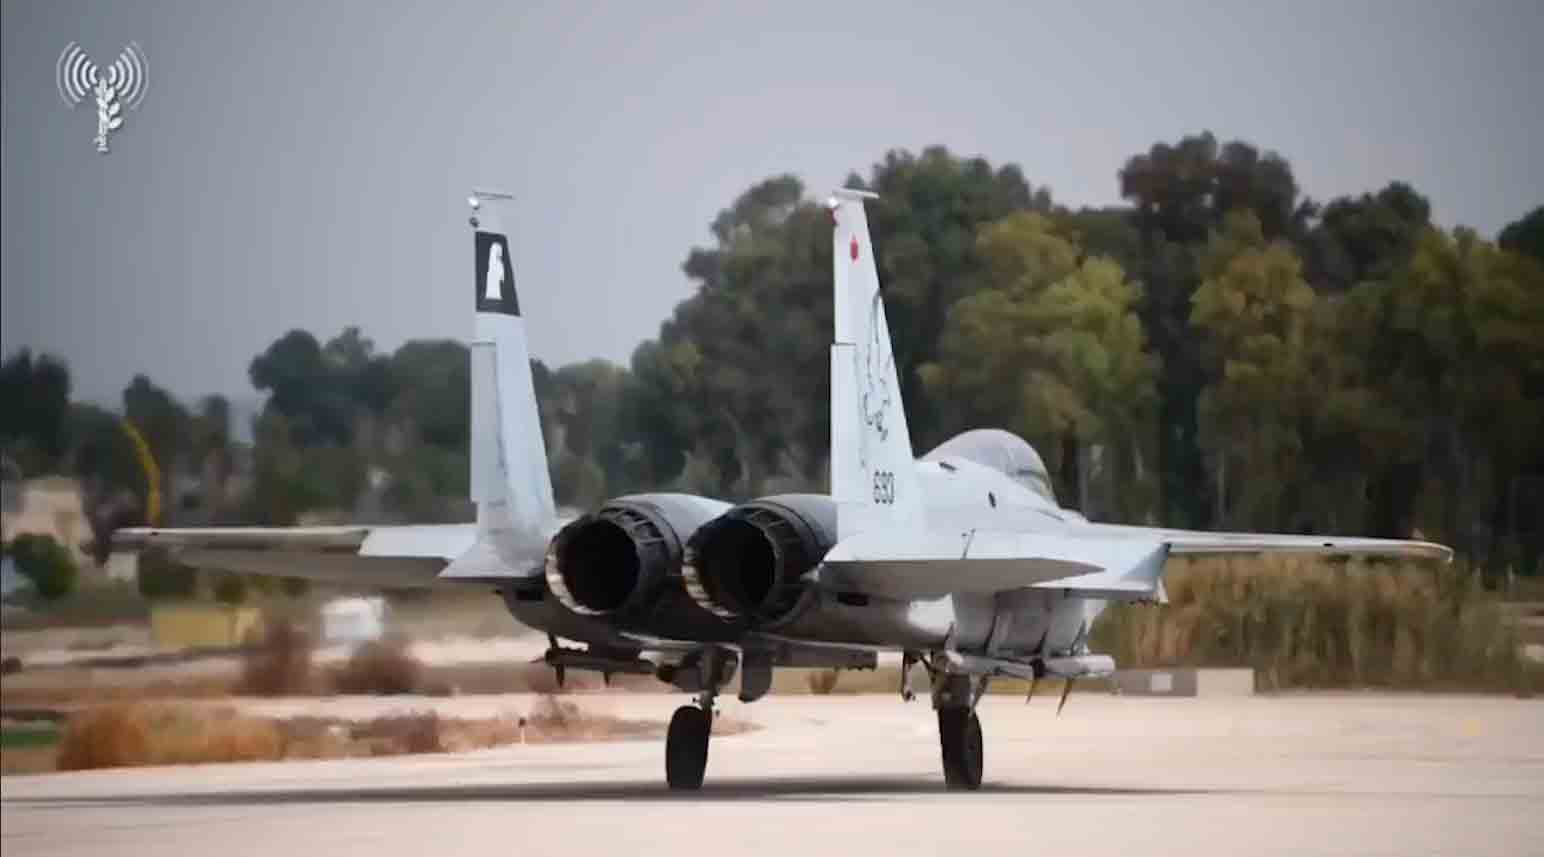 Video: Israelische Luftwaffe veröffentlicht Video von Kampfjet-Operationen. Fotos: Israelische Luftwaffe